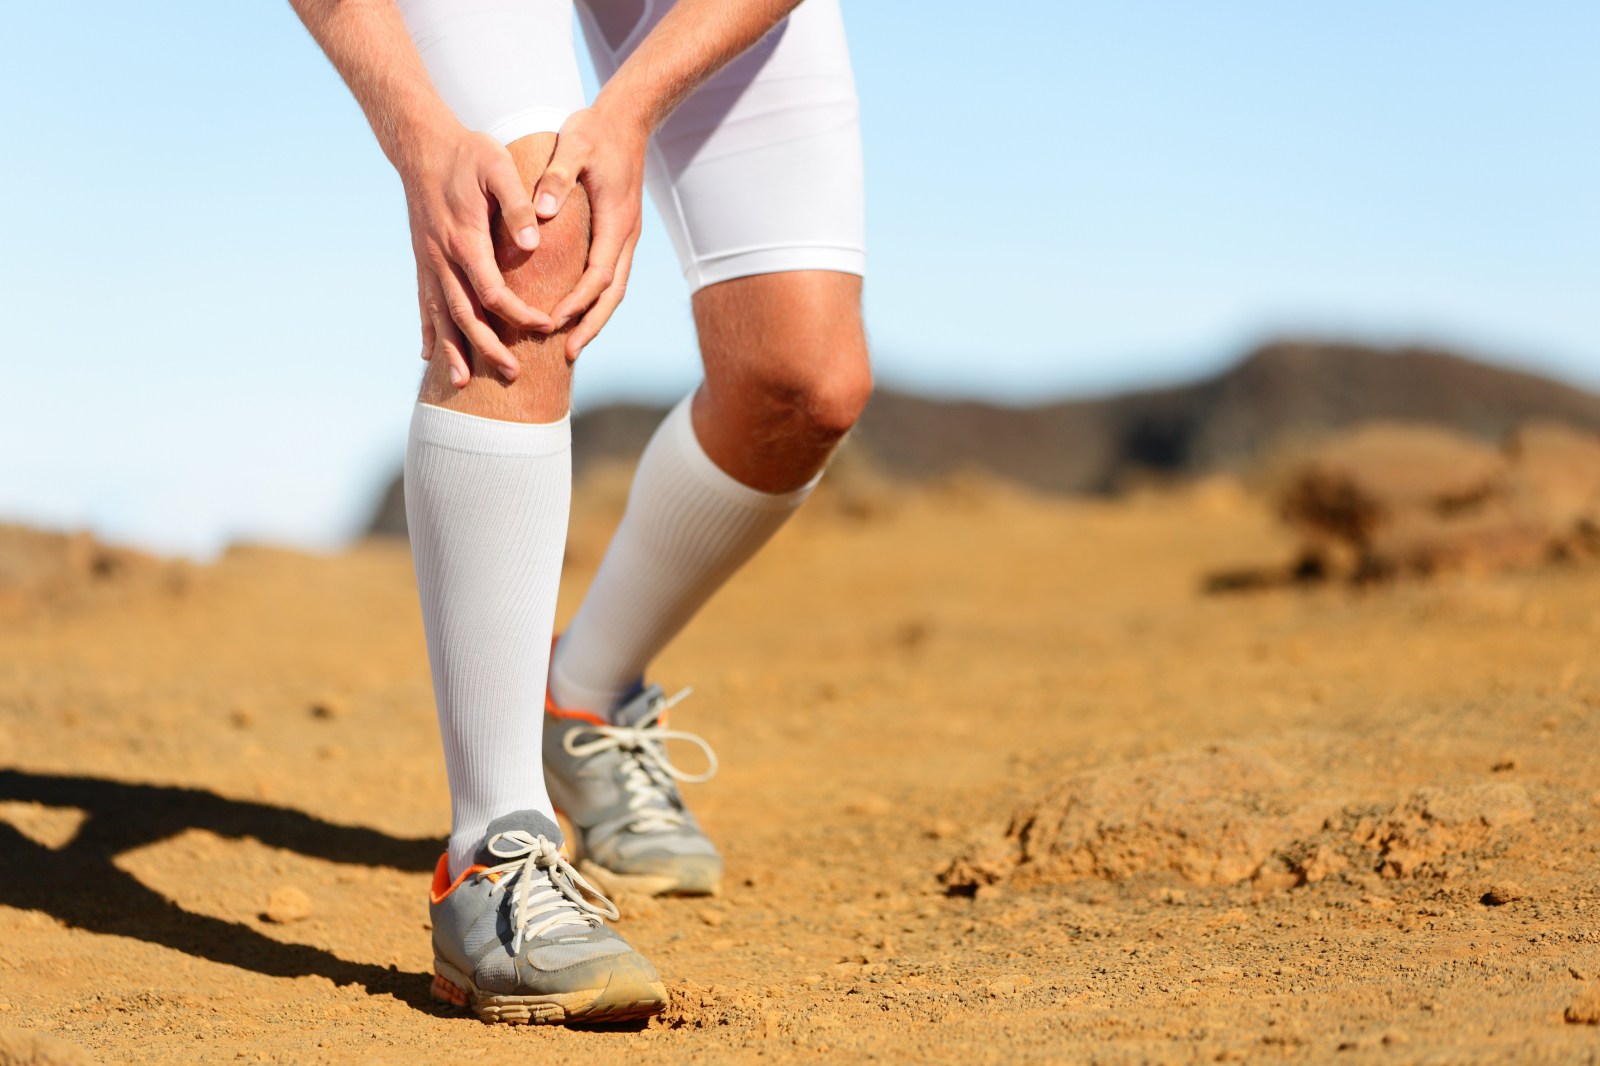 Douleurs au genou pendant le sport : que faire ? | Jérôme Auger ...